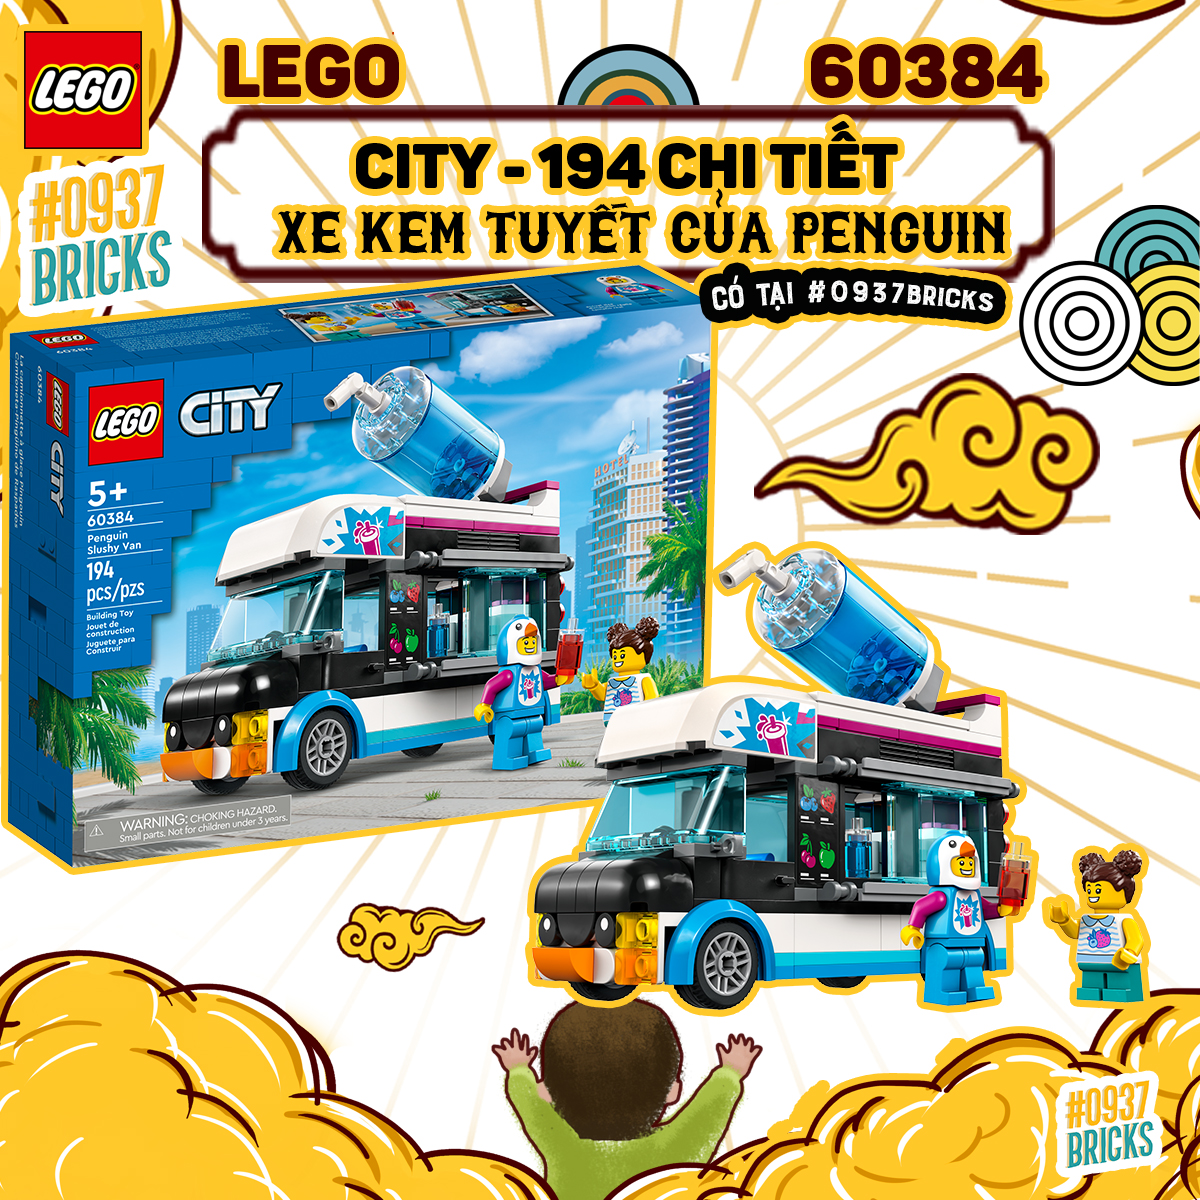 TRỢ GIÁ LEGO City 60384 Xe Kem Tuyết Của Penguin 194 Chi Tiết CÓ SẴN TẠI